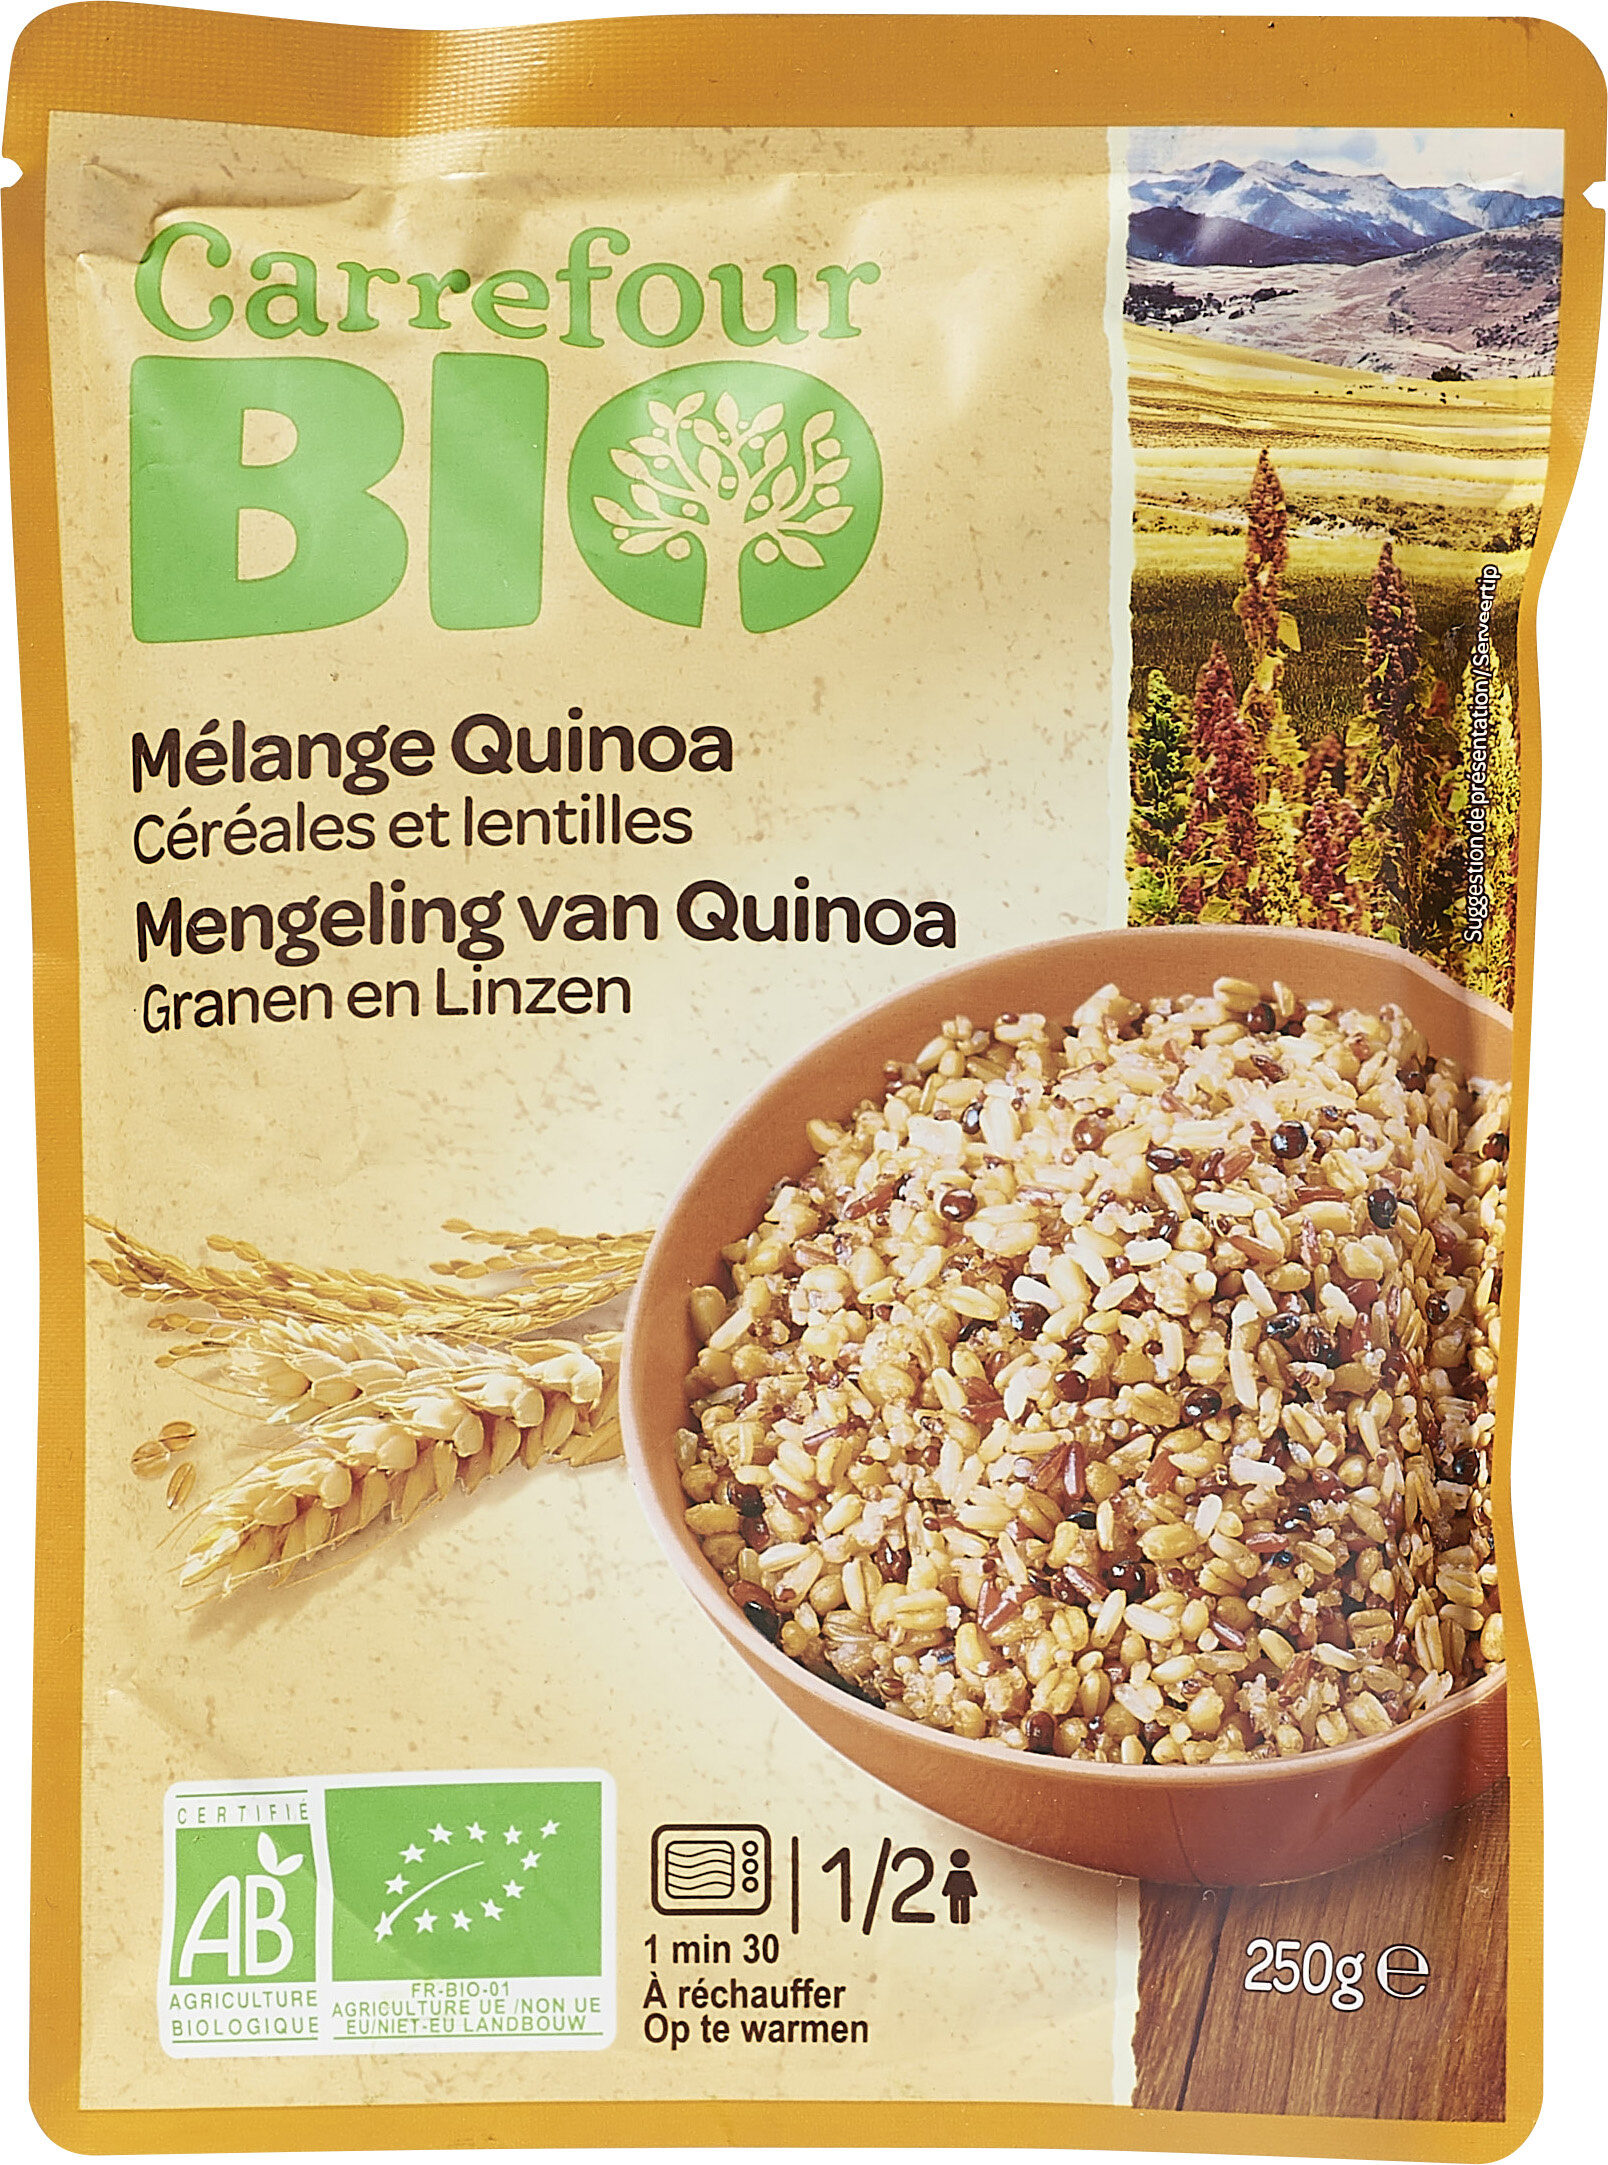 Mélange Quinoa Céréales et lentilles - Producte - fr